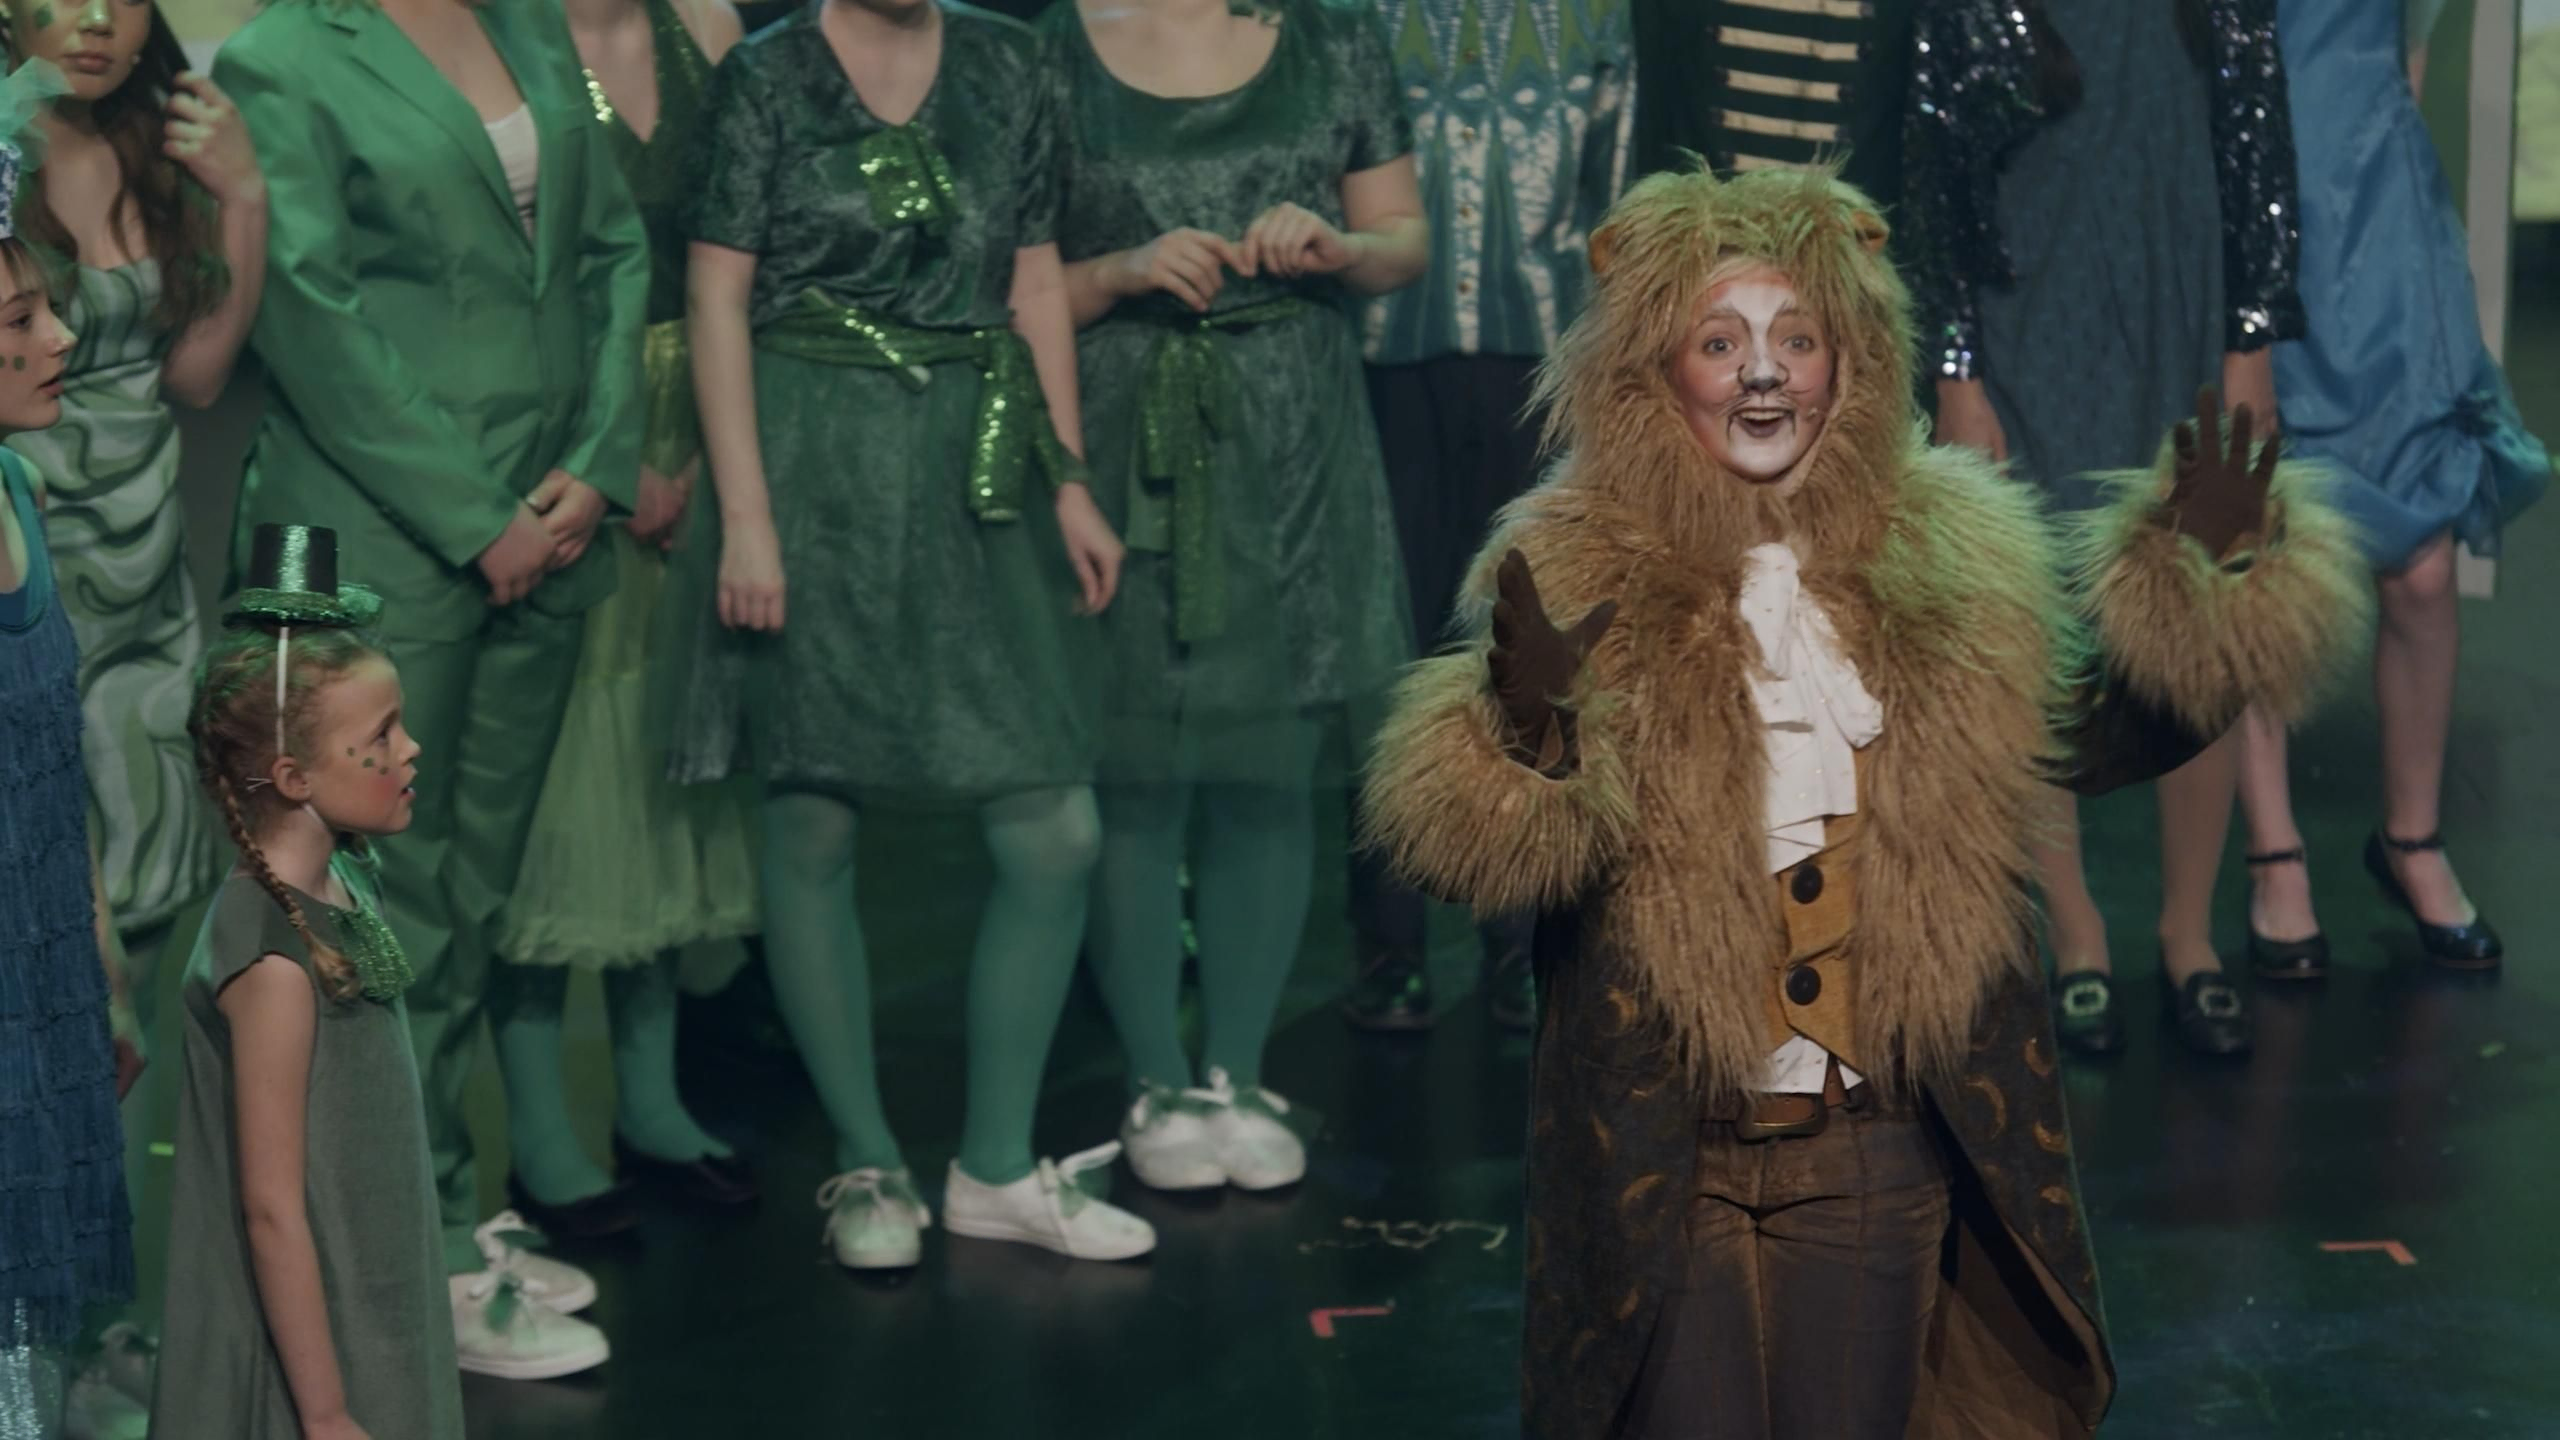 Den feige løven synger på scenen med folk kledd i grønt